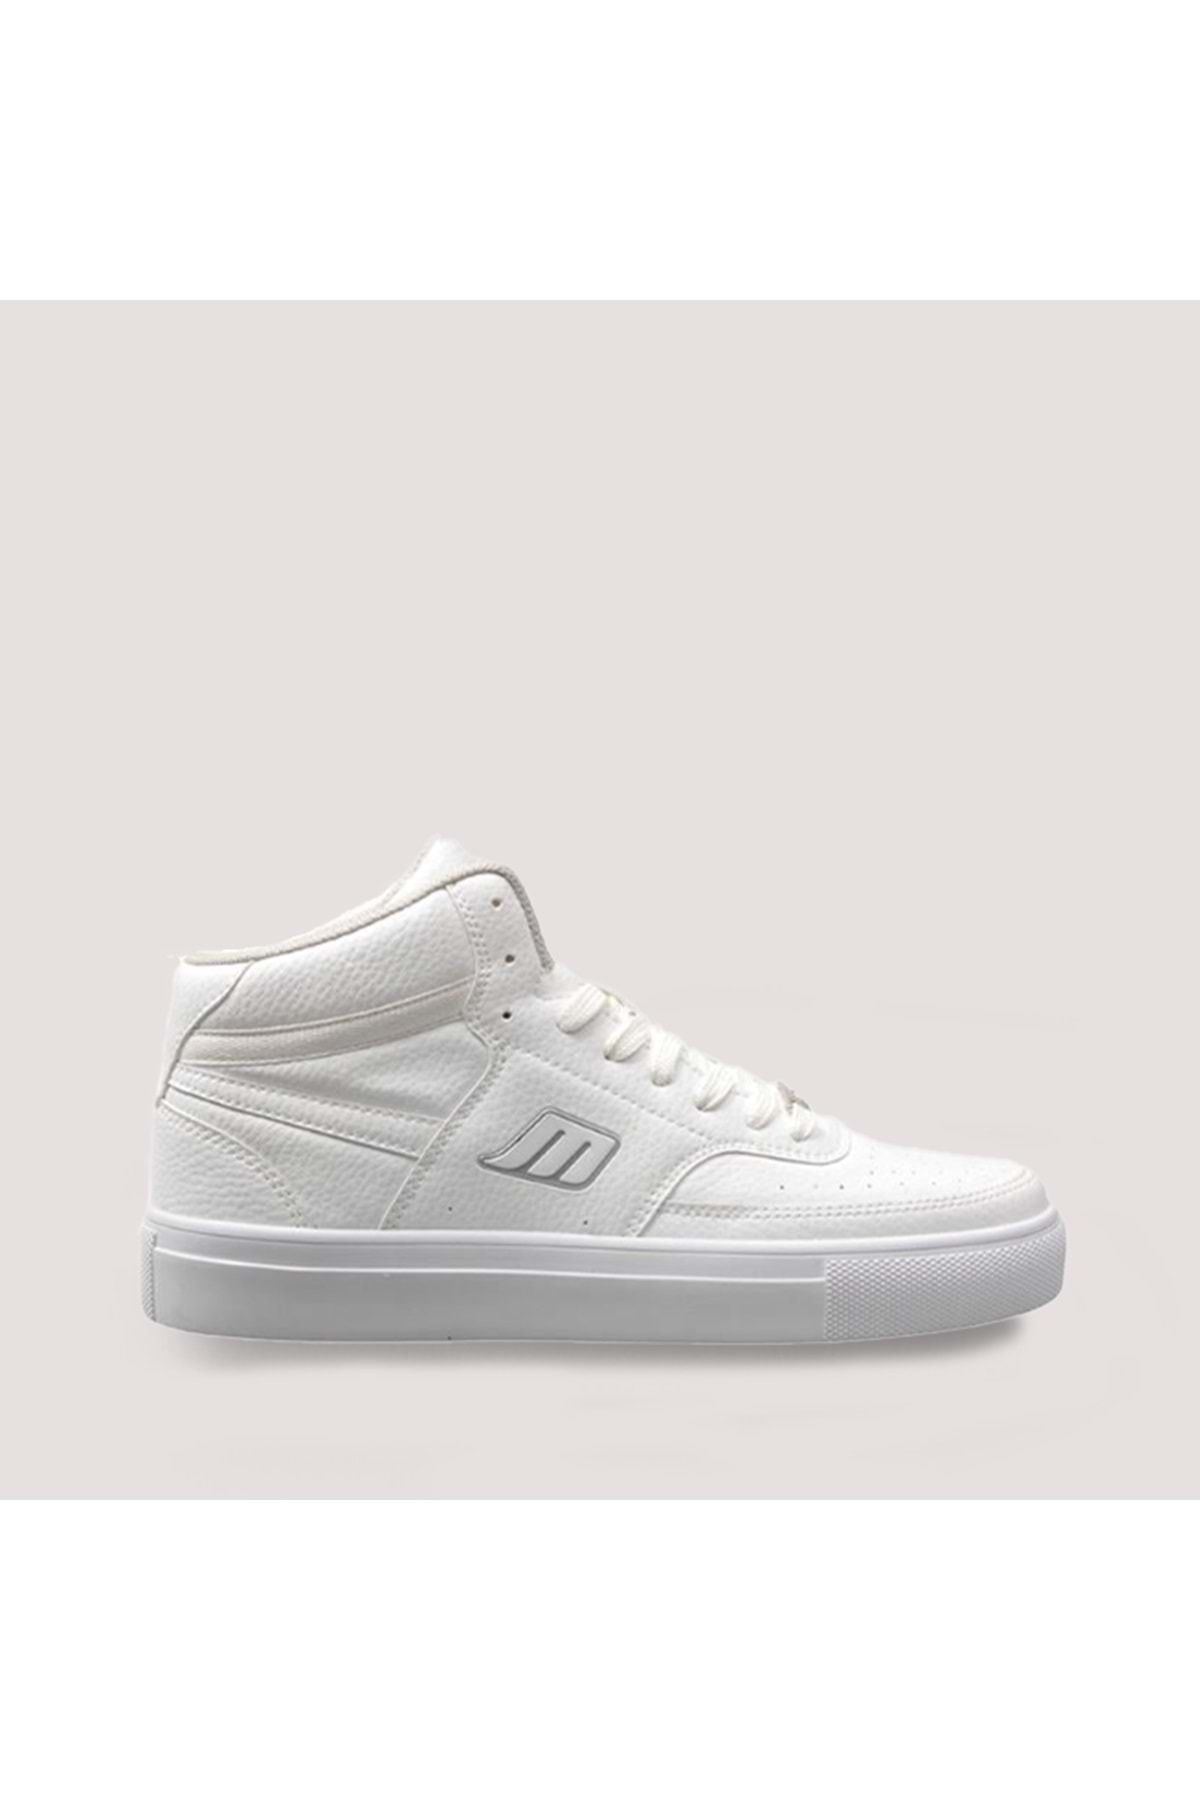 MP M.p 1290 Ünisex Bilekli Spor Ayakkabı 39 Beyaz